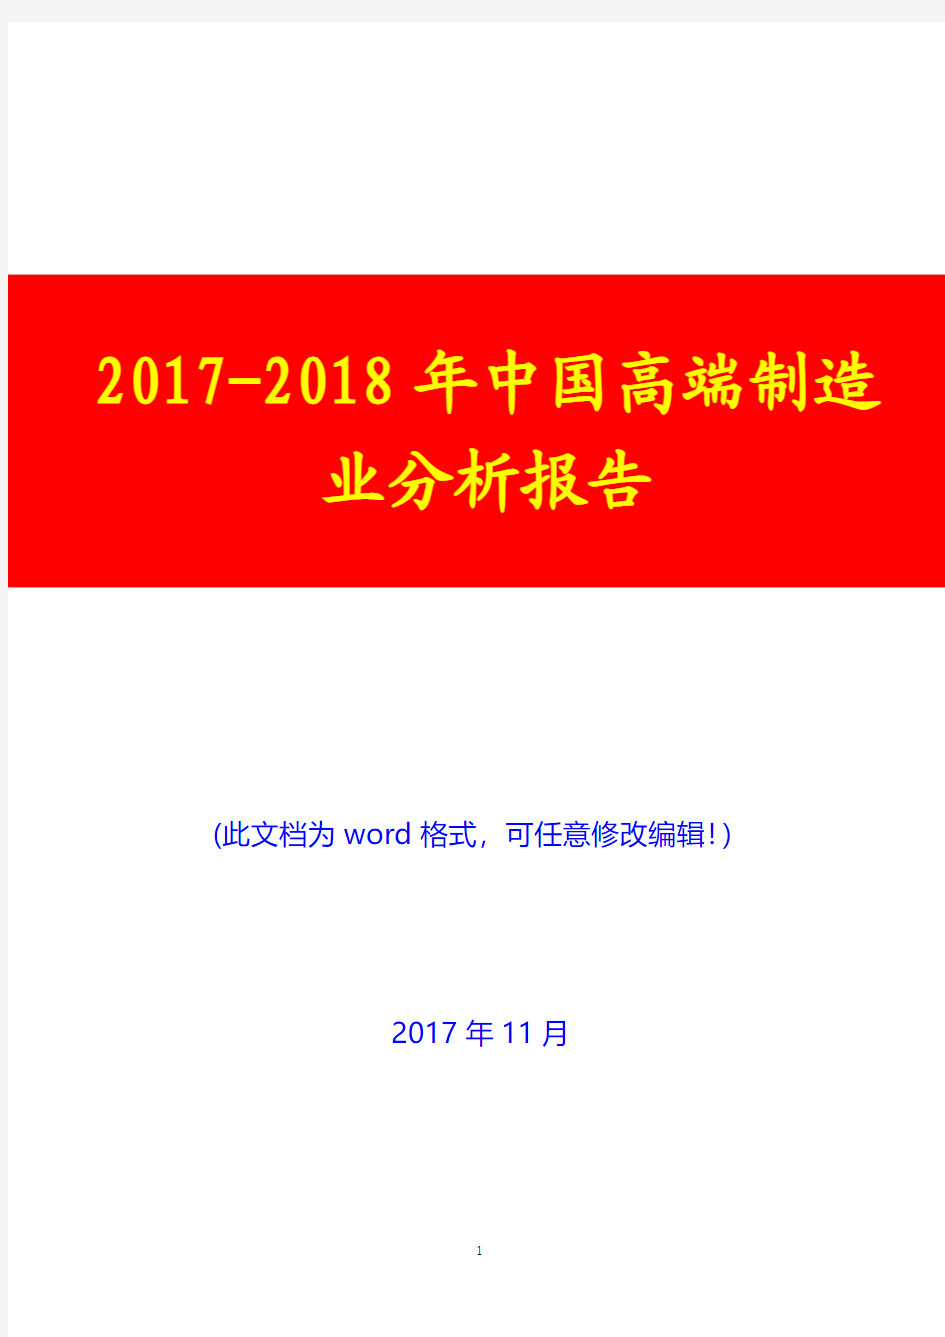 2017-2018年中国高端制造业展望分析报告